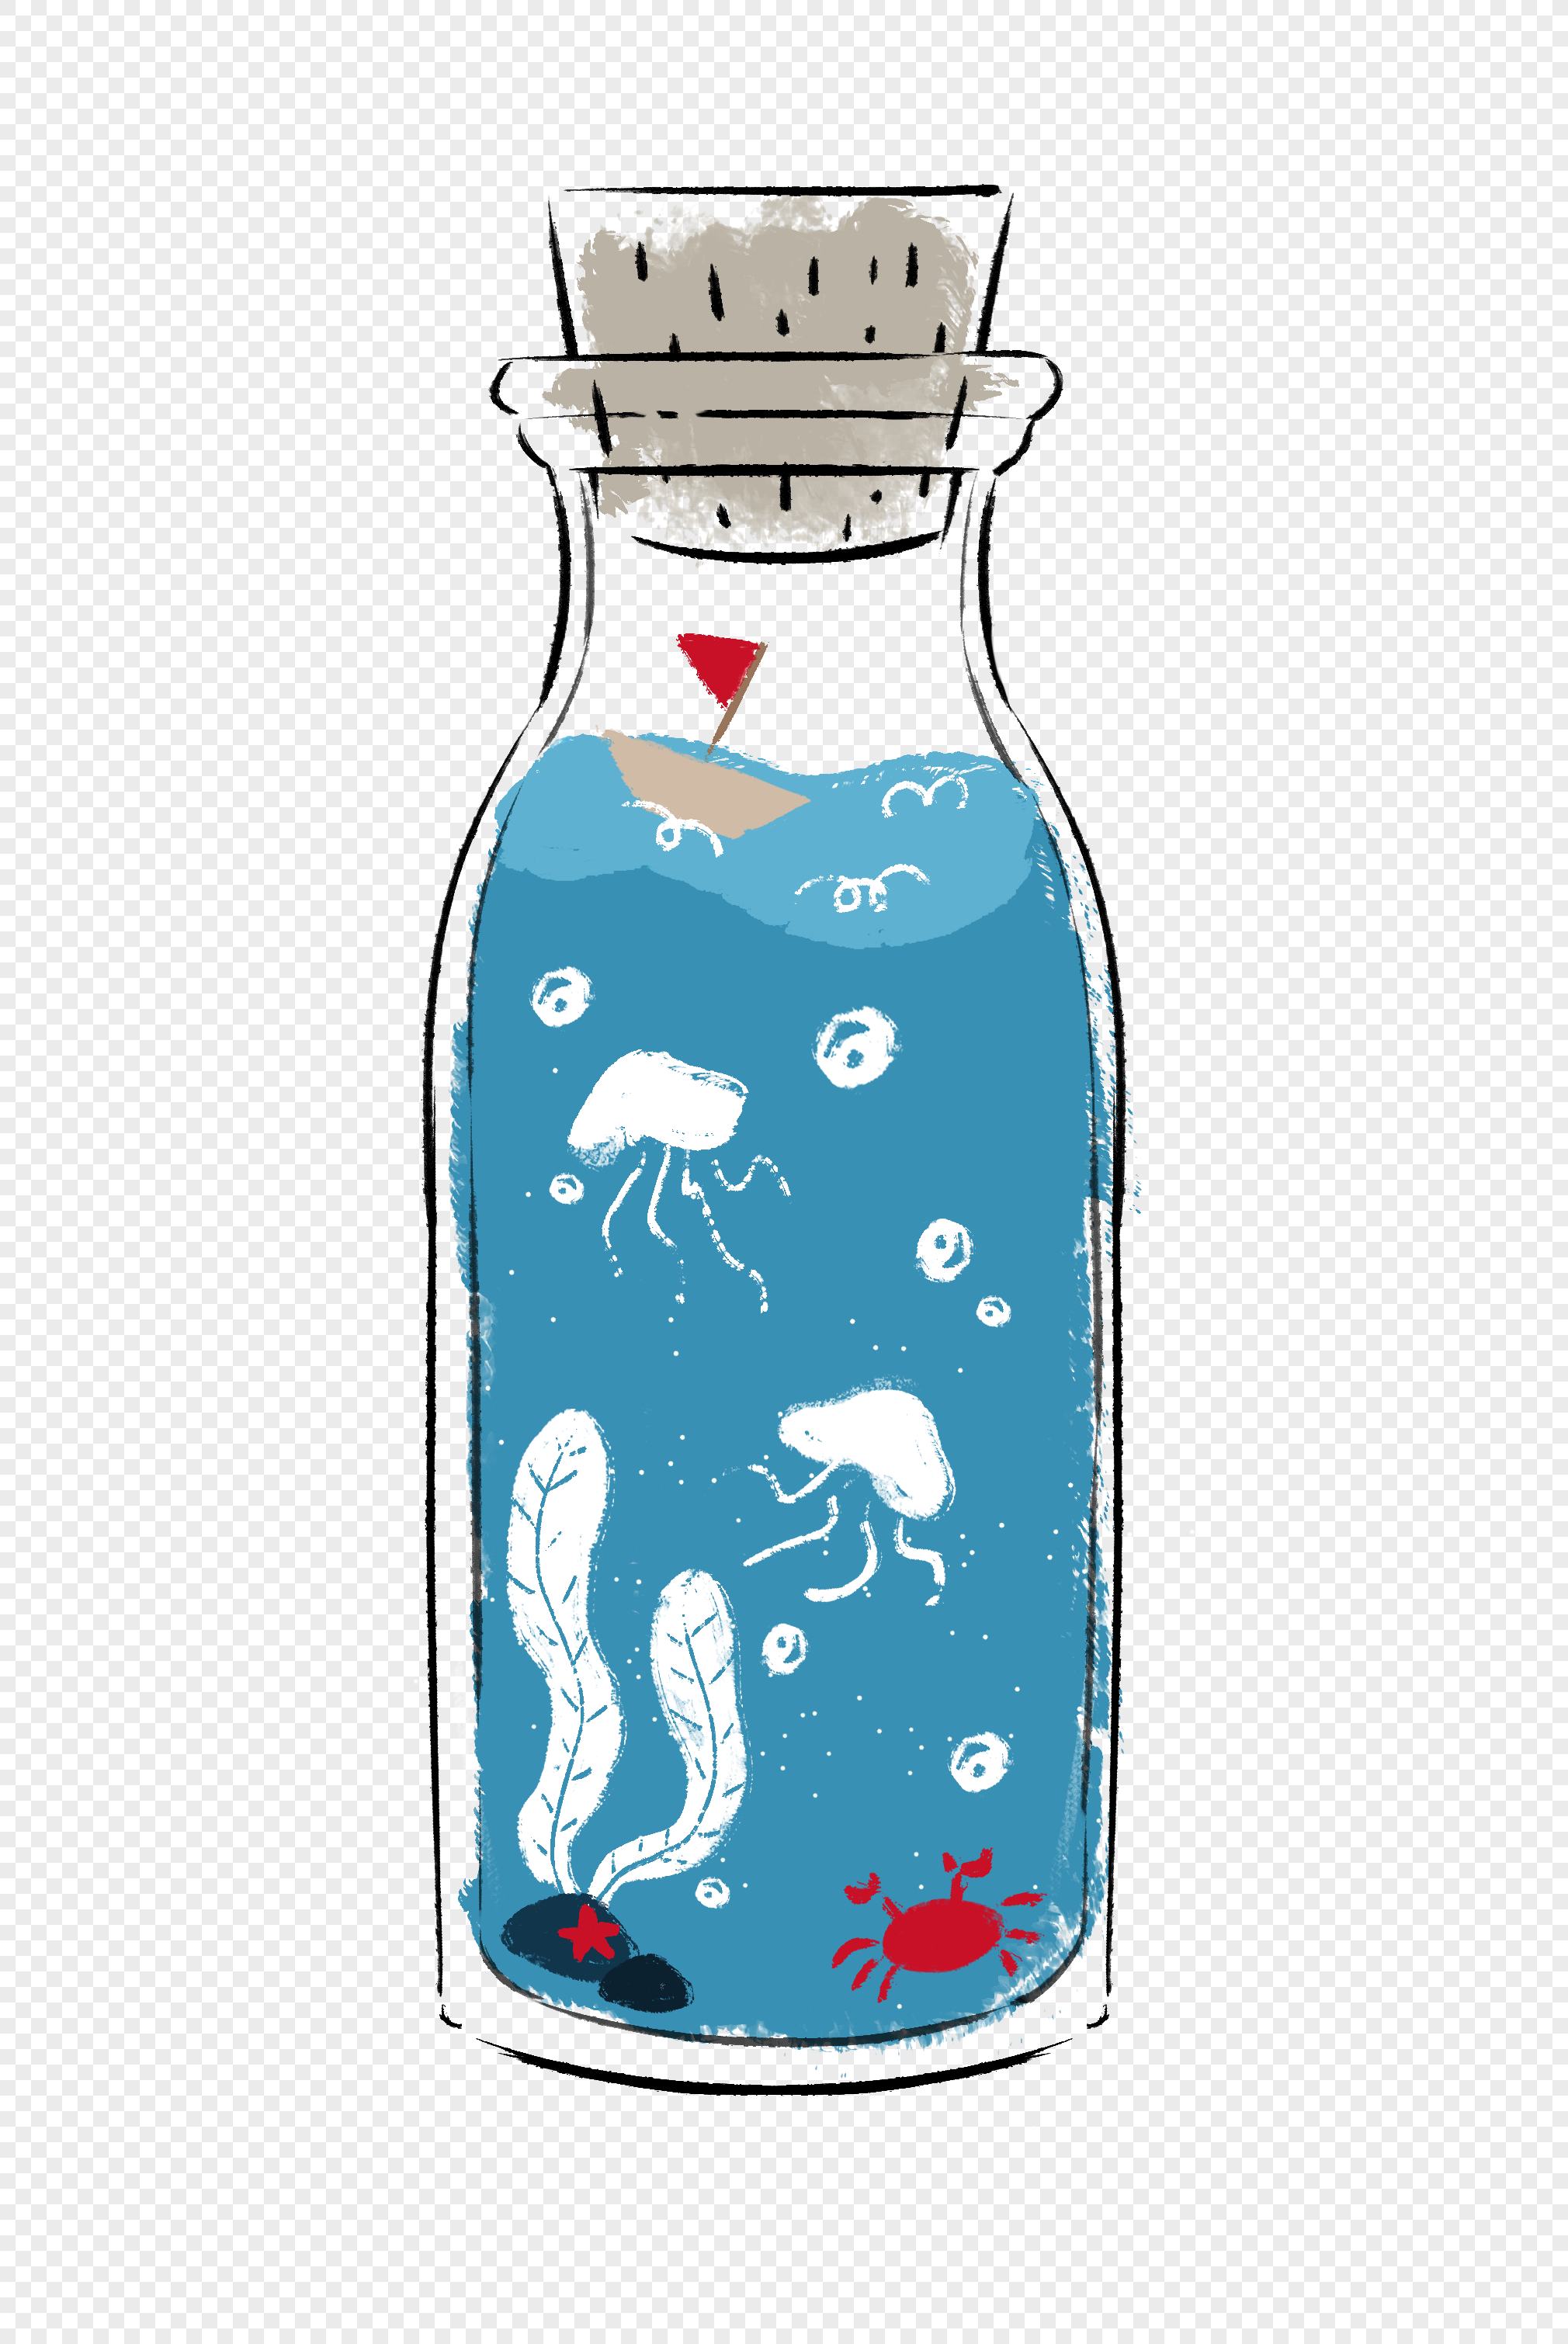 Kawaii Bottle PNG Transparent Images Free Download | Vector Files | Pngtree